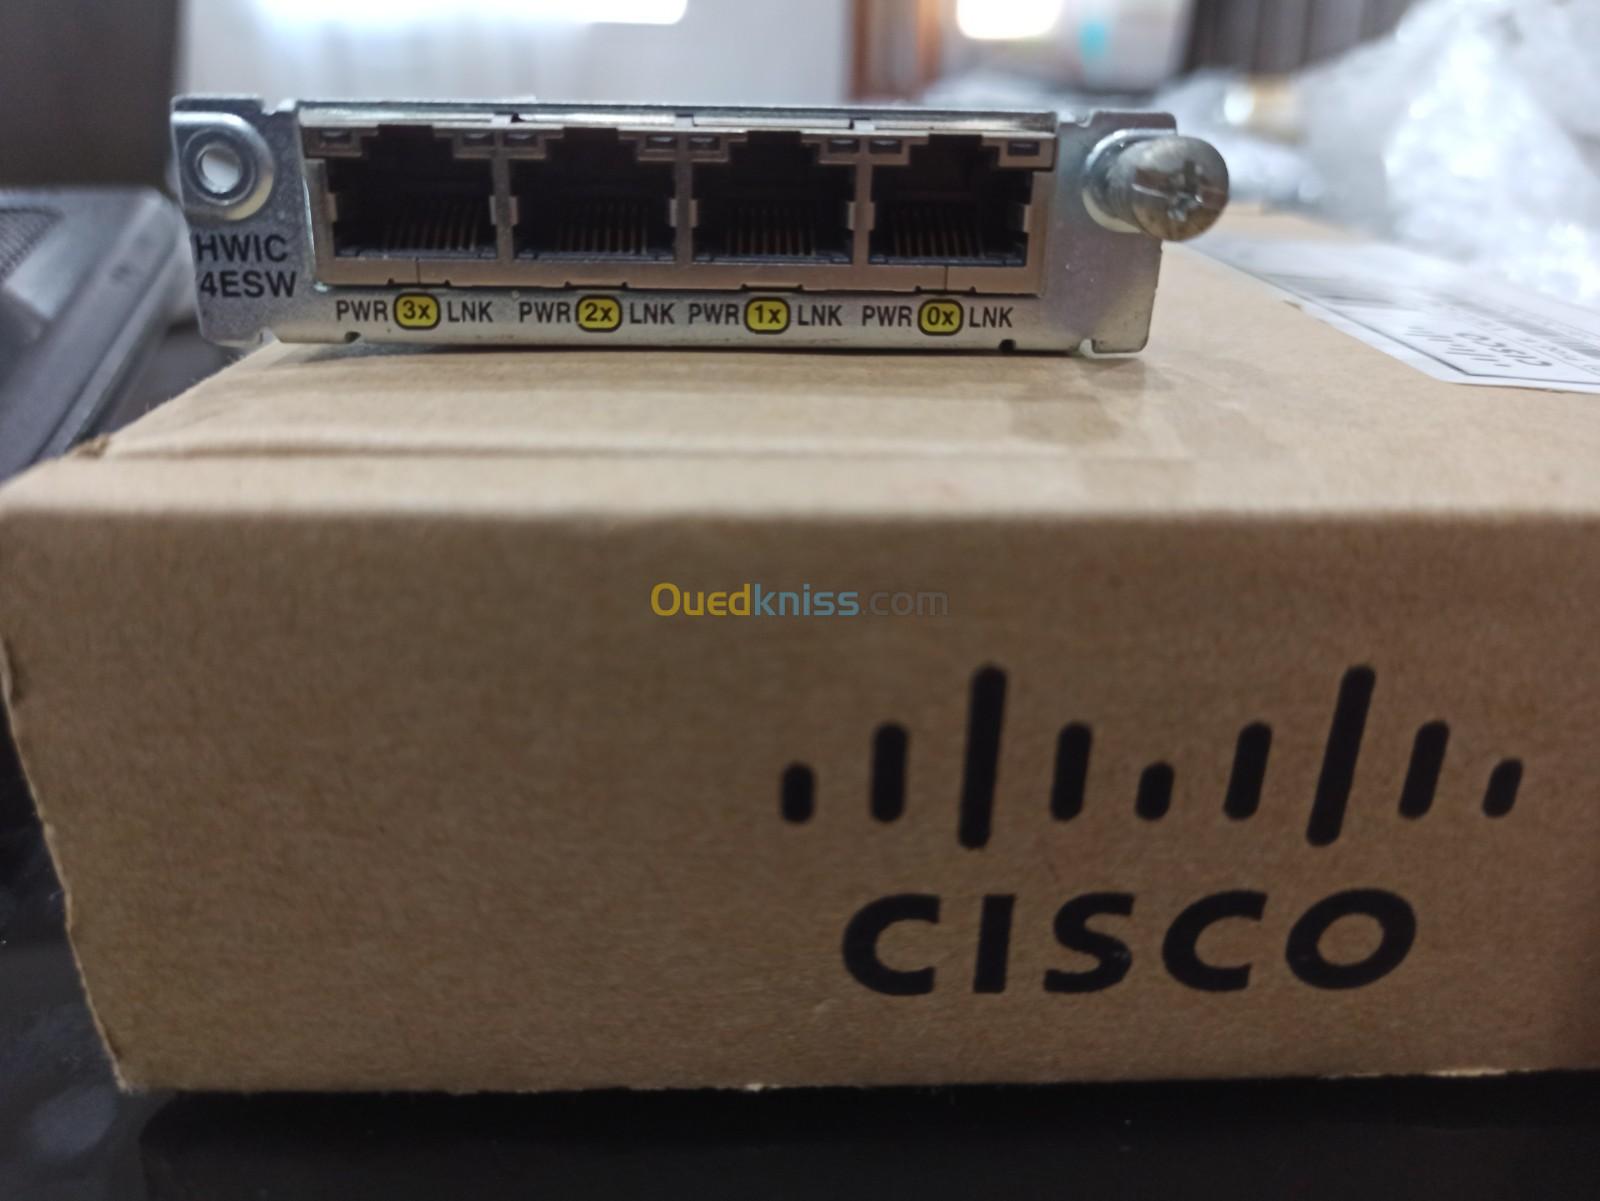 Cisco Stack cable 9200| SFP | HWIC 4ESW | VIC2-4FXO | VIC2-2FXO | STACK-T1-50CM | 37-1122-01|NIM-4FXS |NIM-2MFT-T1/E1|SM-X-NIM-ADPTR